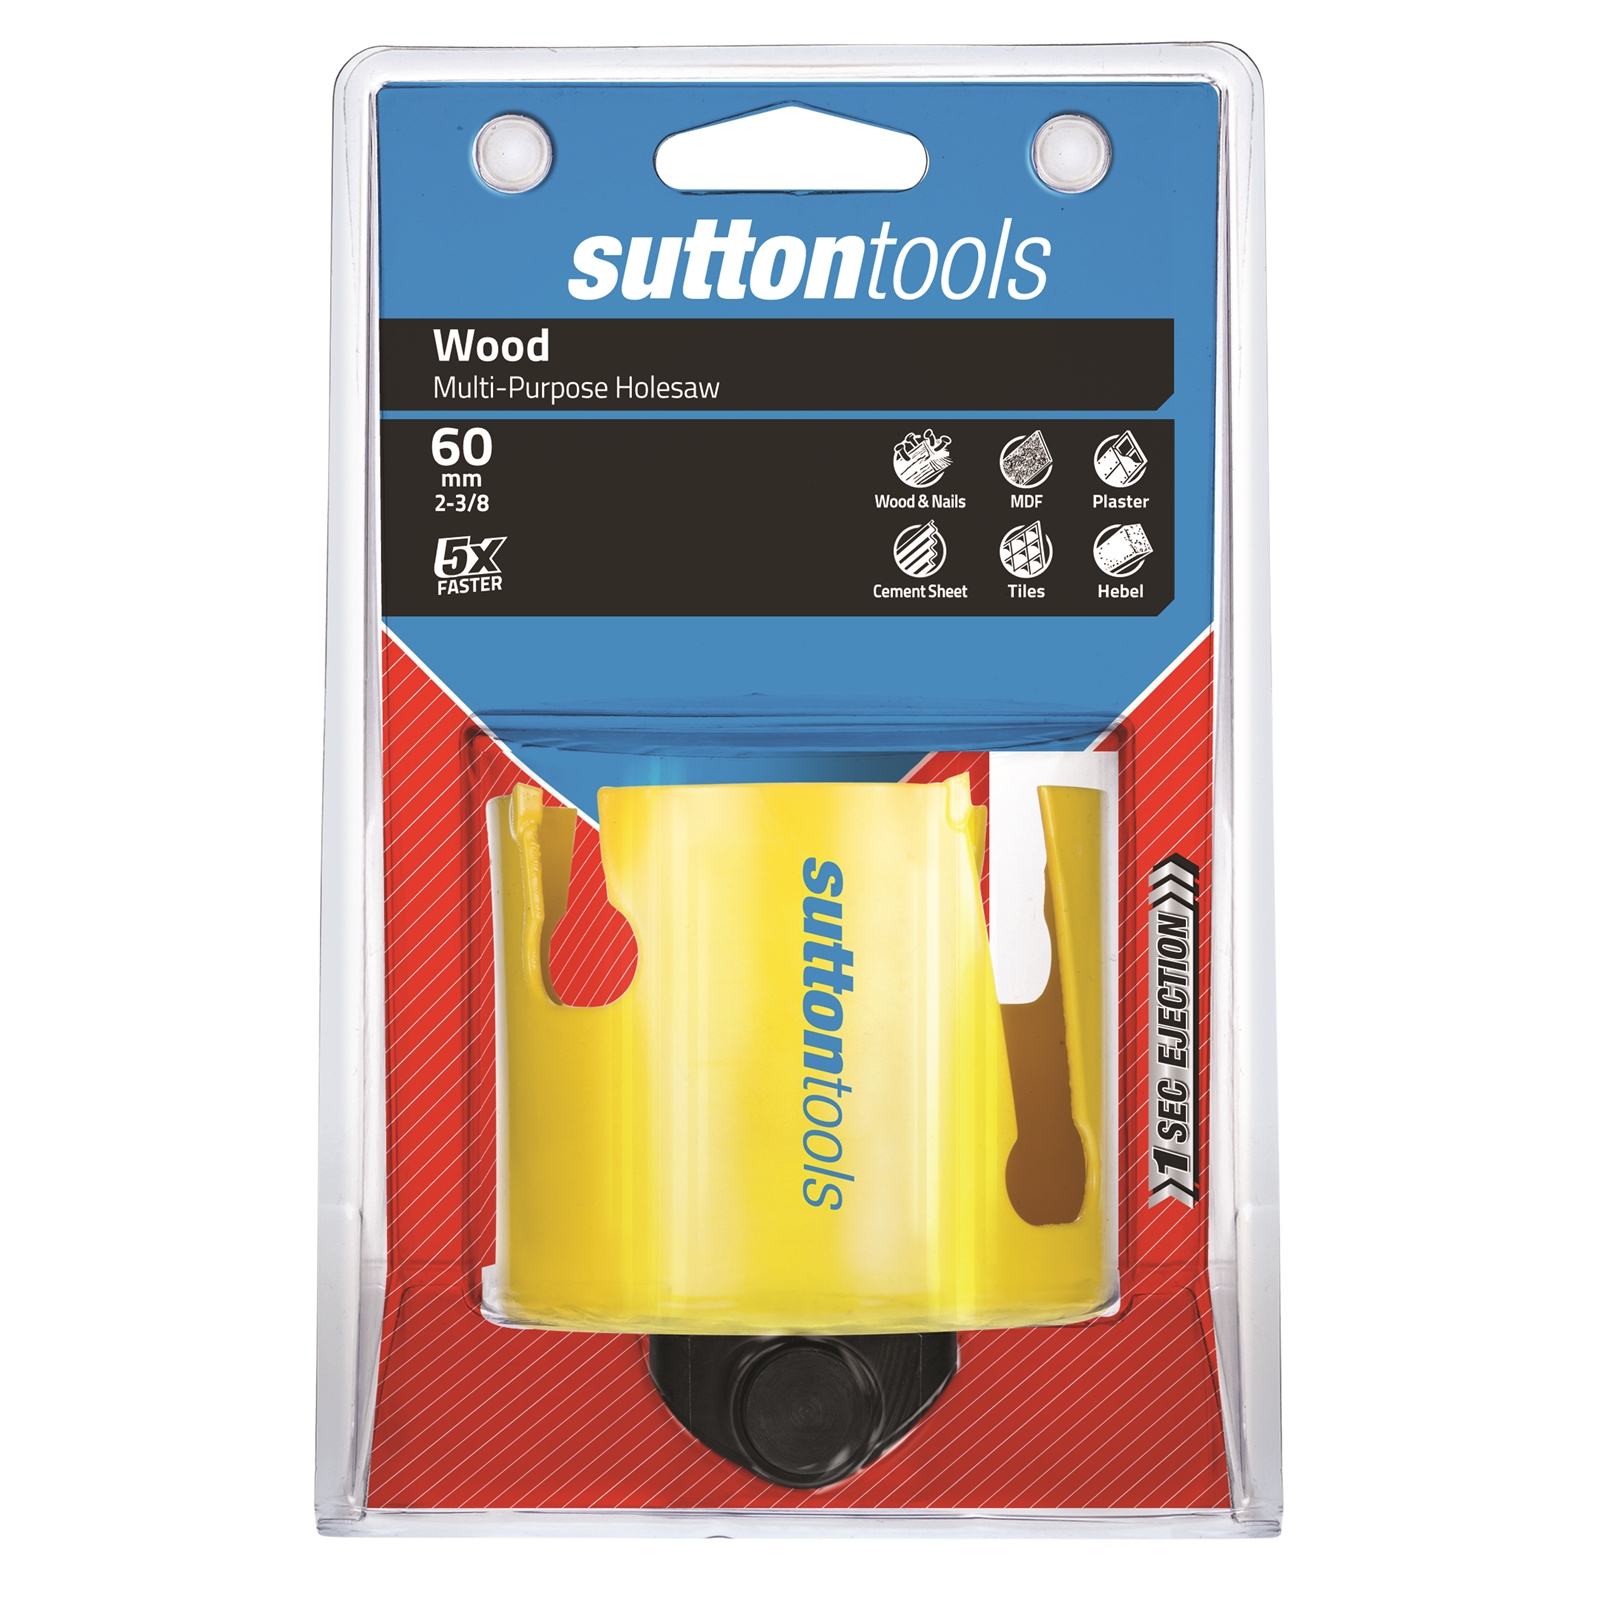 Sutton Tools 60mm Multipurpose Holesaw